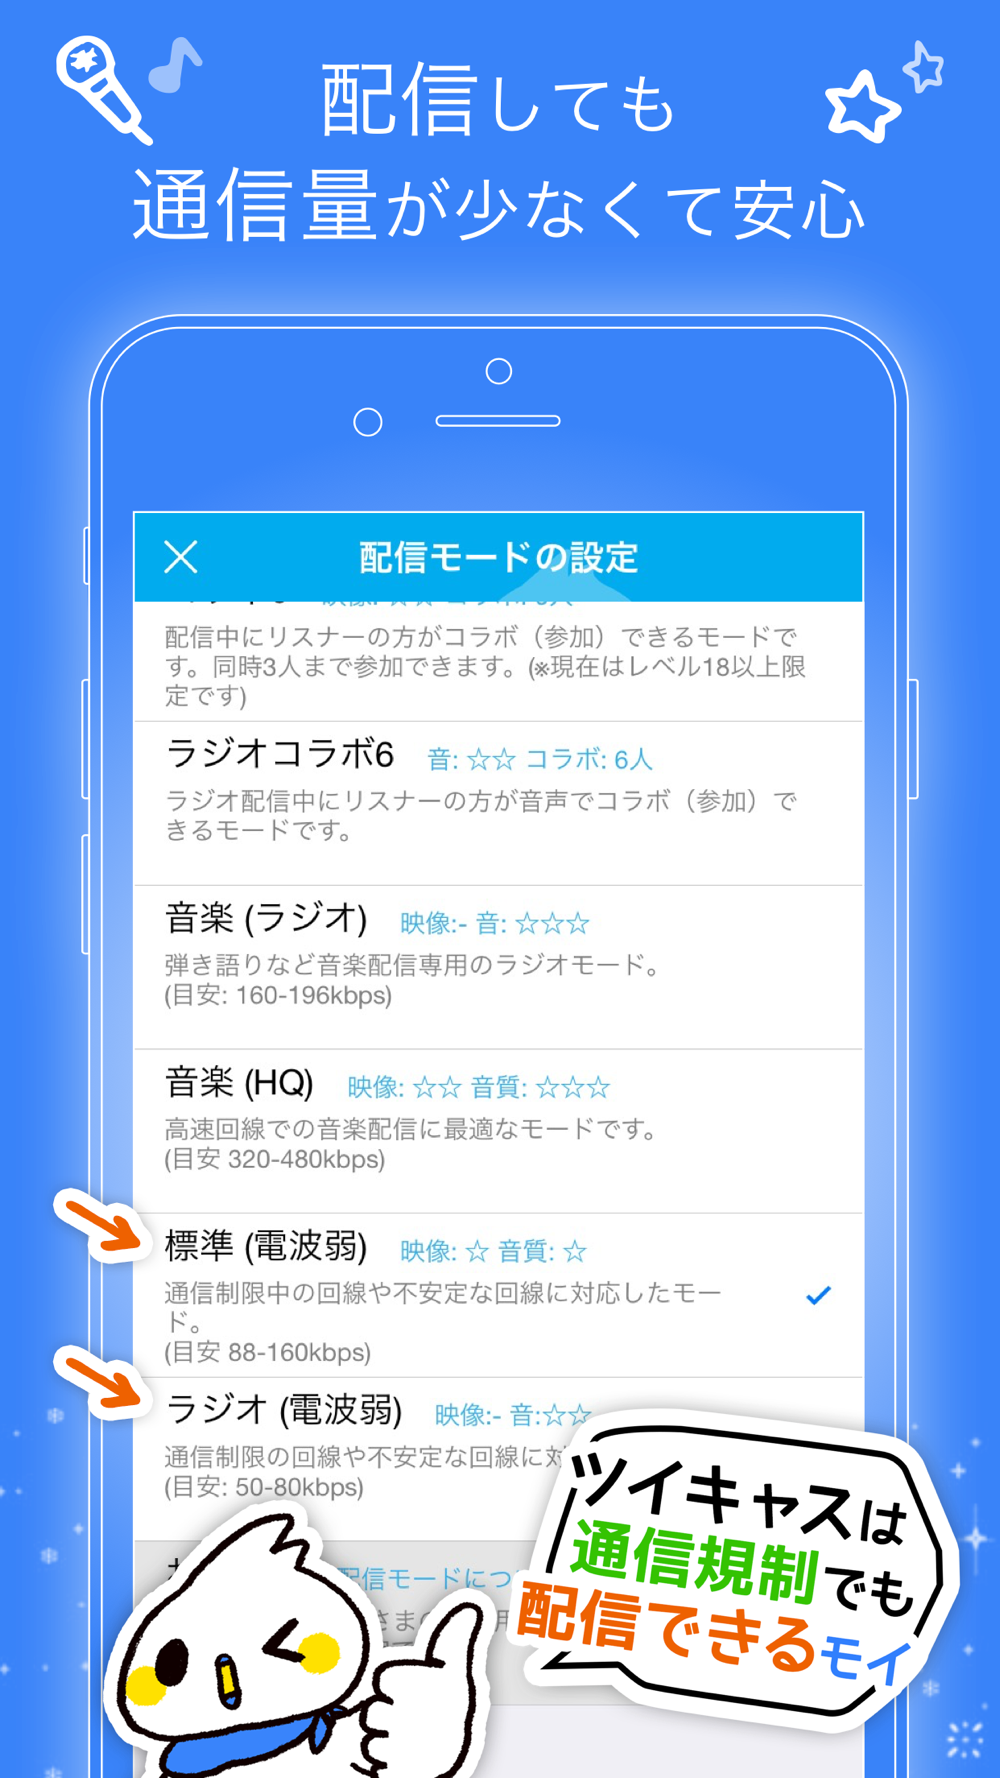 ツイキャス ライブ Free Download App For Iphone Steprimo Com